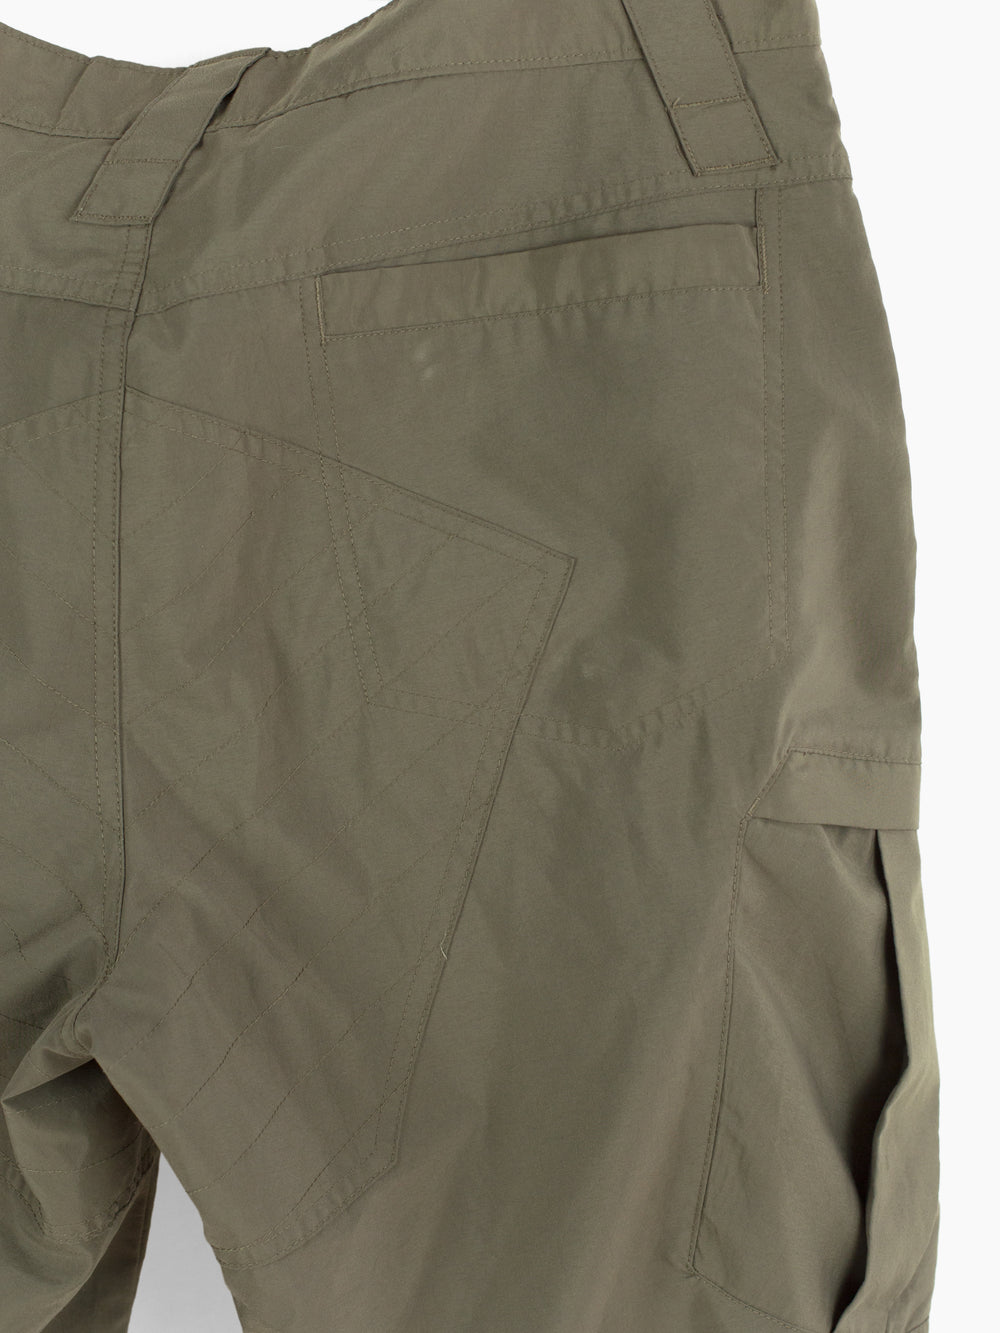 Nike ACG 00s Inset Cargo Pocket Shorts